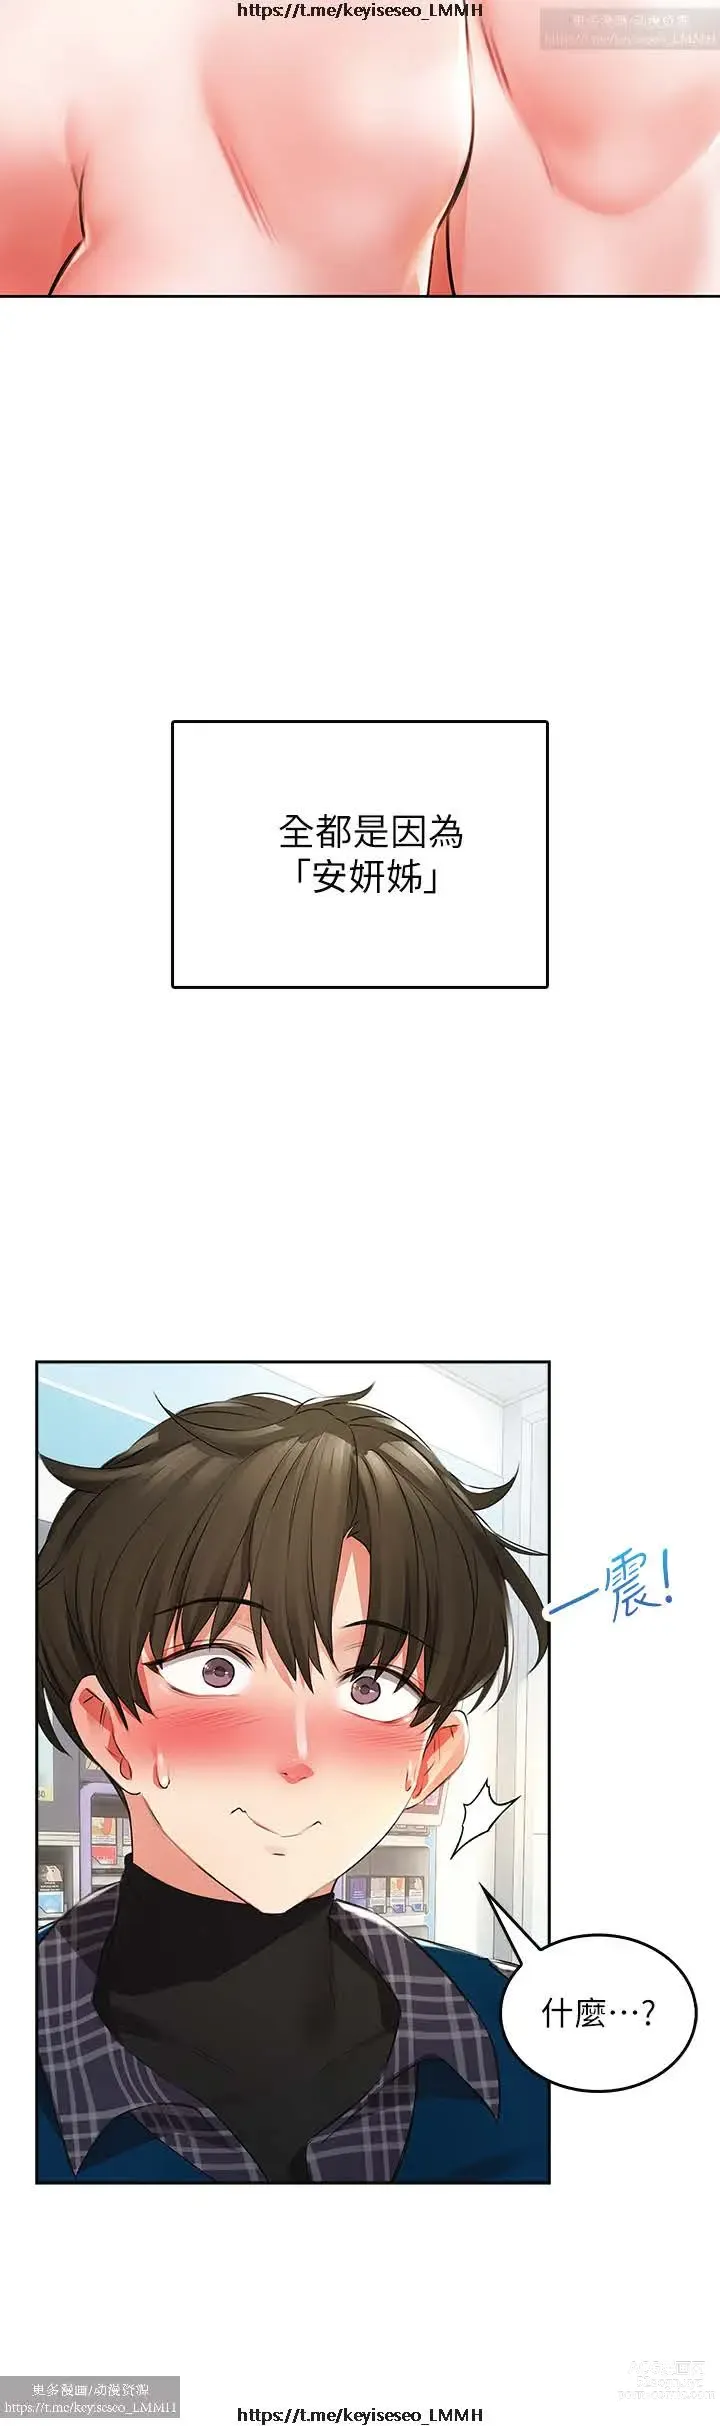 Page 9 of manga 小心你后面 1-24 完结